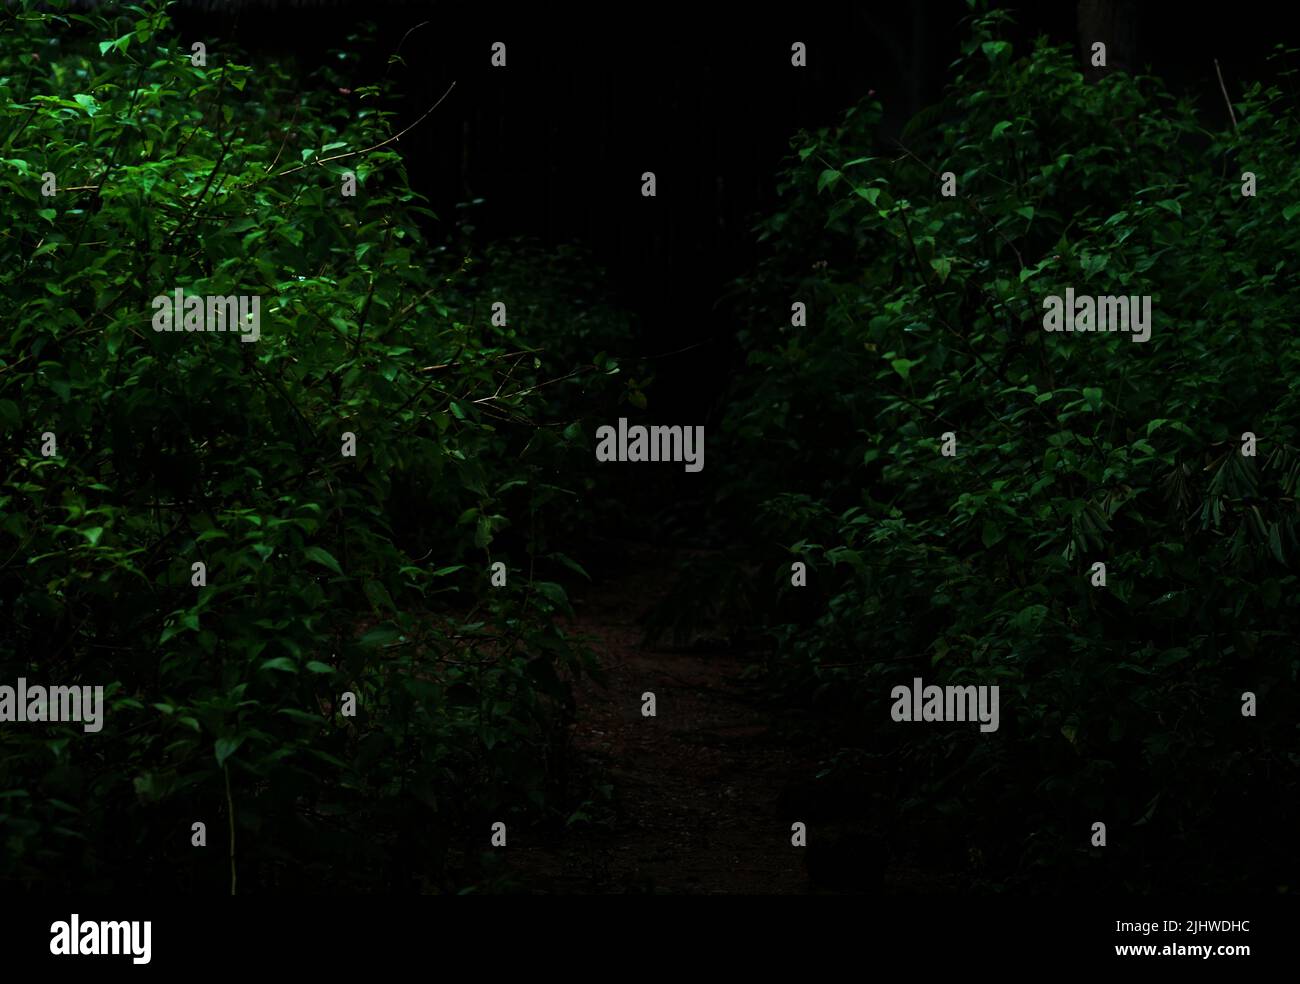 El follaje del bosque tropical planta arbustos en la noche oscura Foto de stock